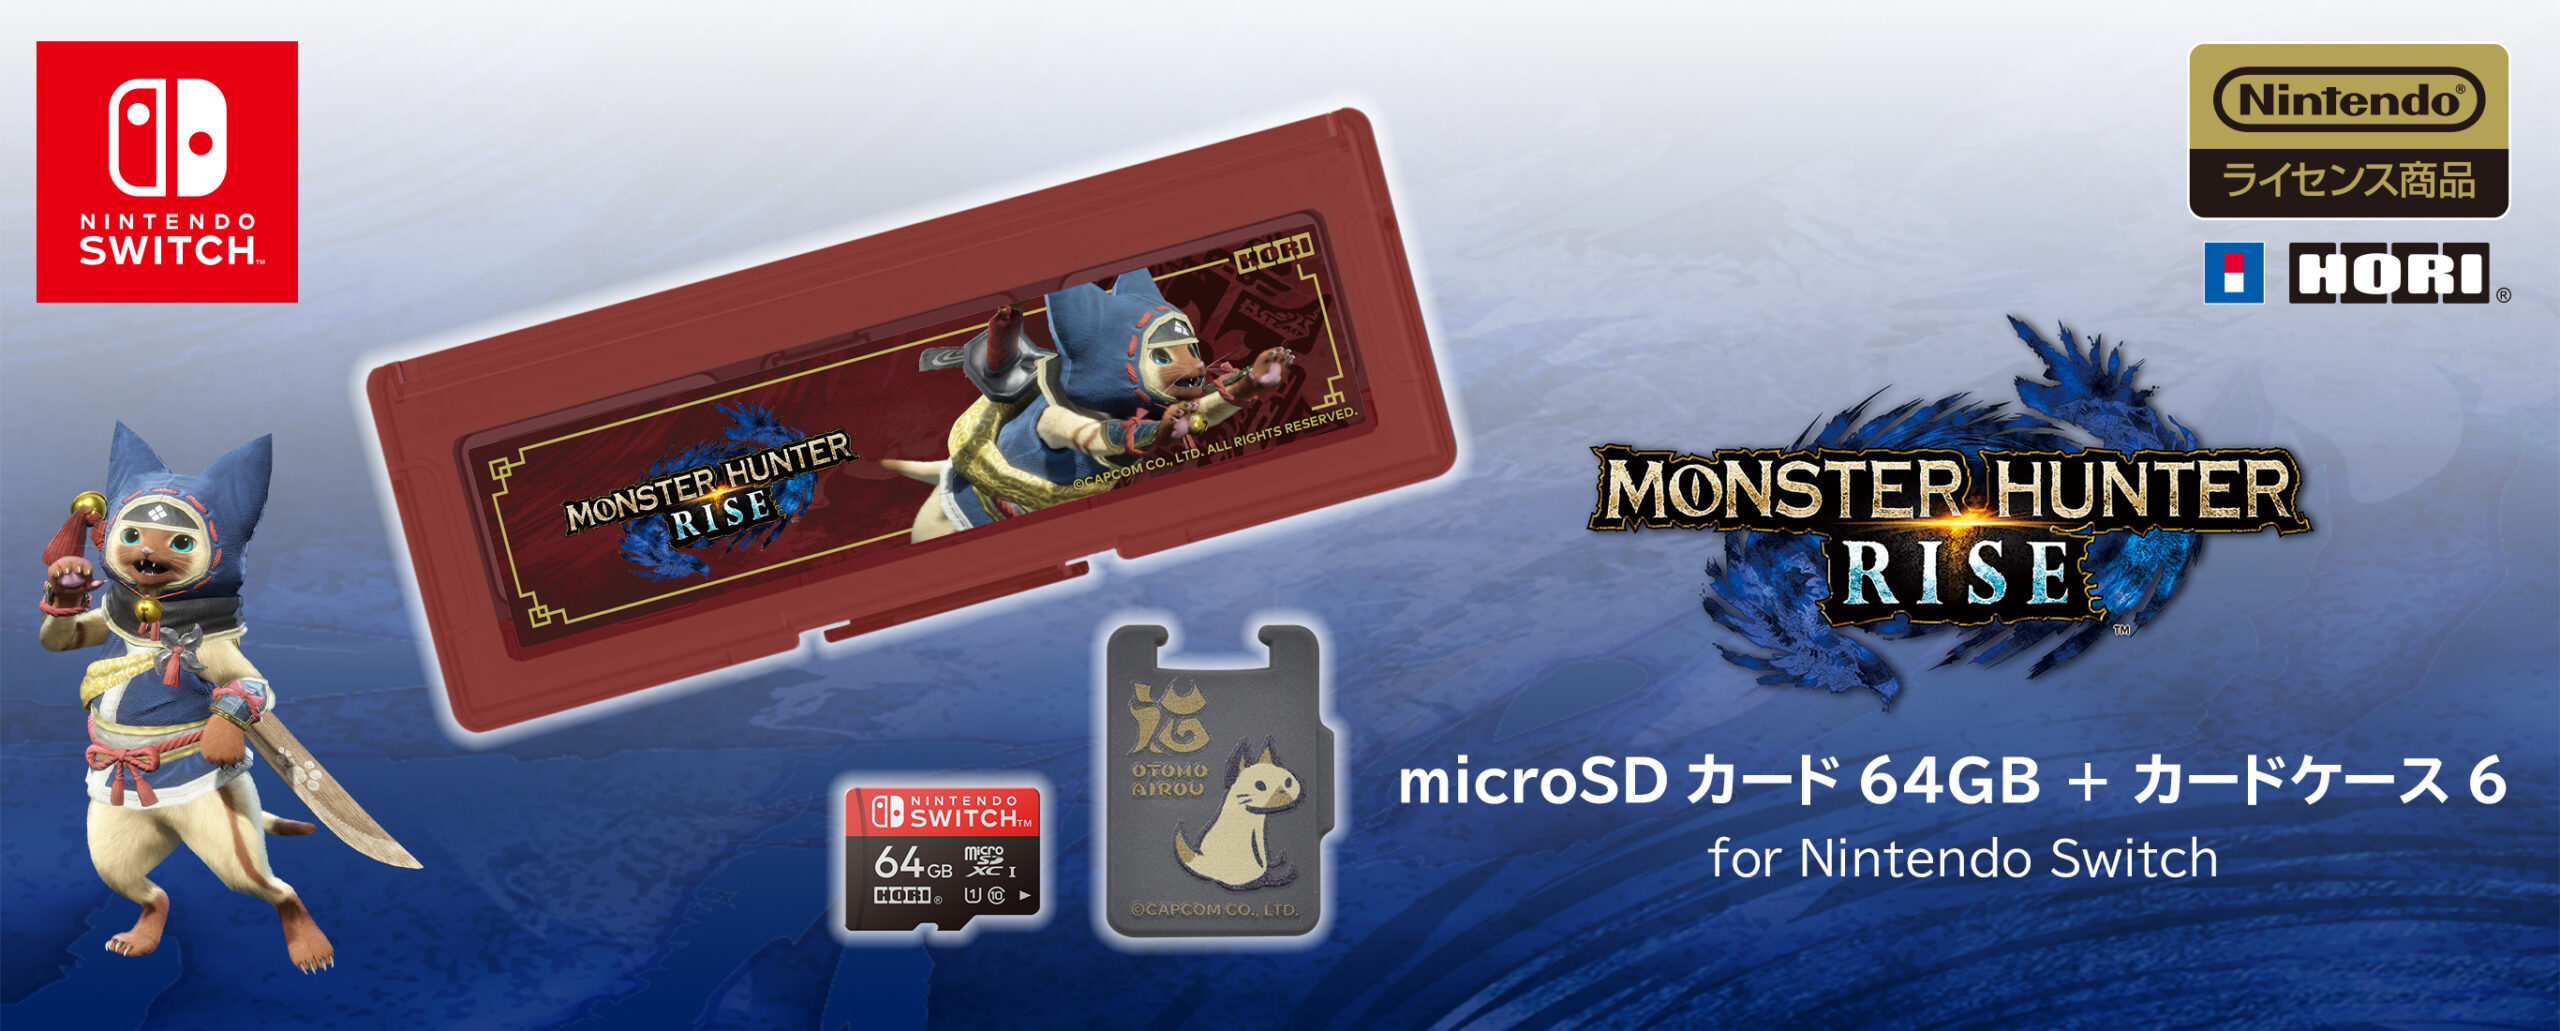 株式会社 HORI | モンスターハンターライズ microSDカード64GB +